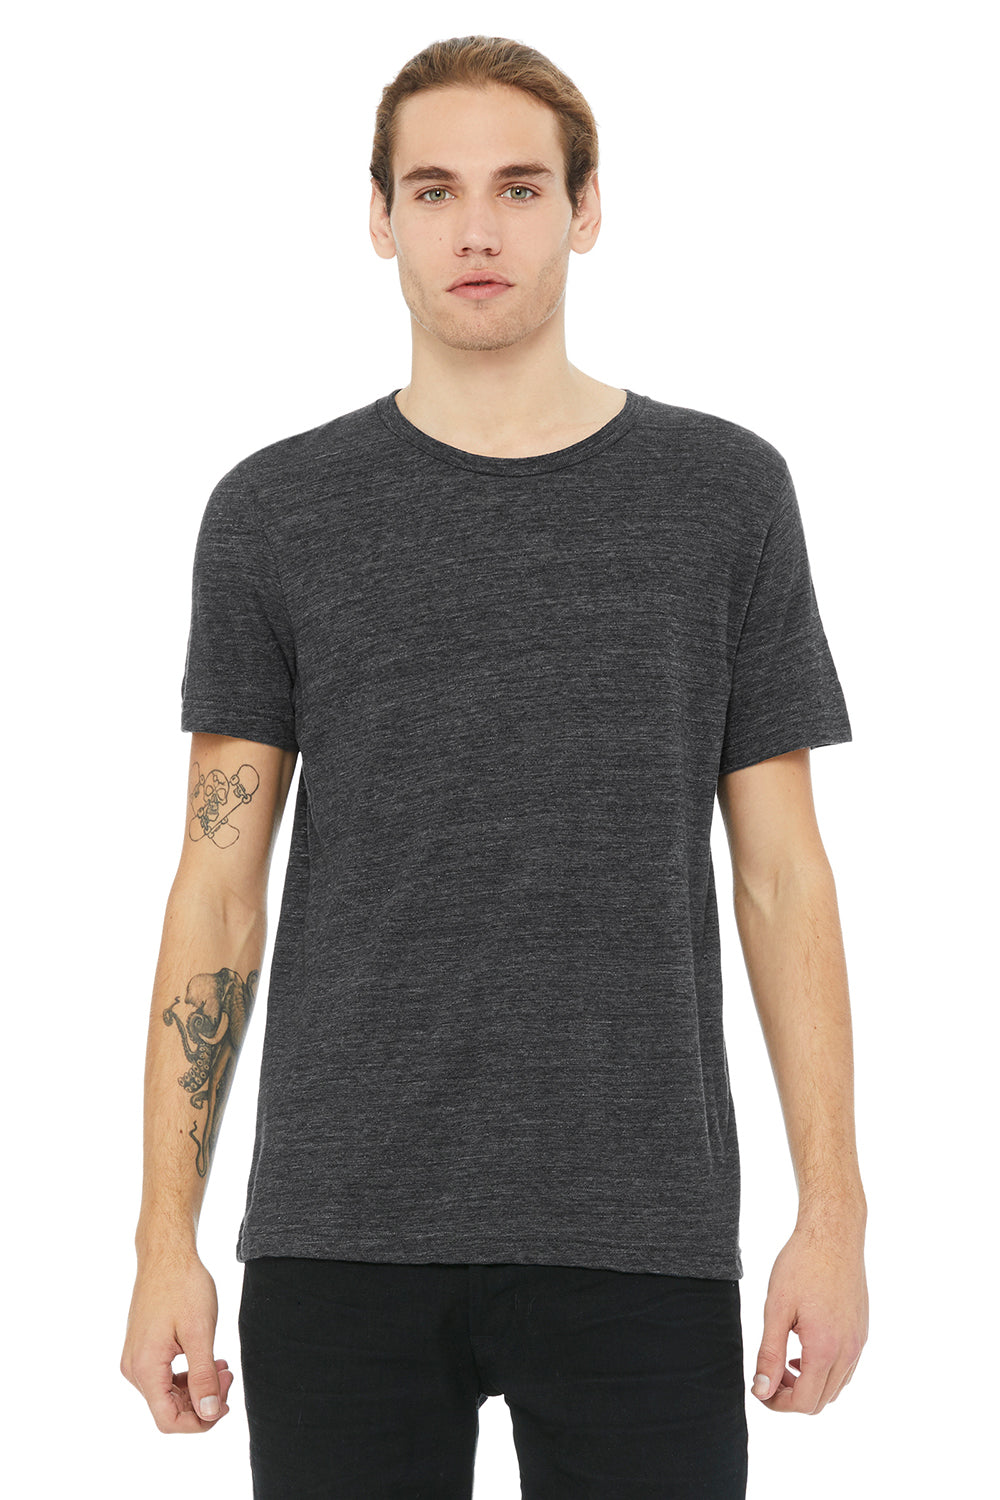 Bella + Canvas 3650 Mens Short Sleeve Crewneck T-Shirt Charcoal Black Slub Front